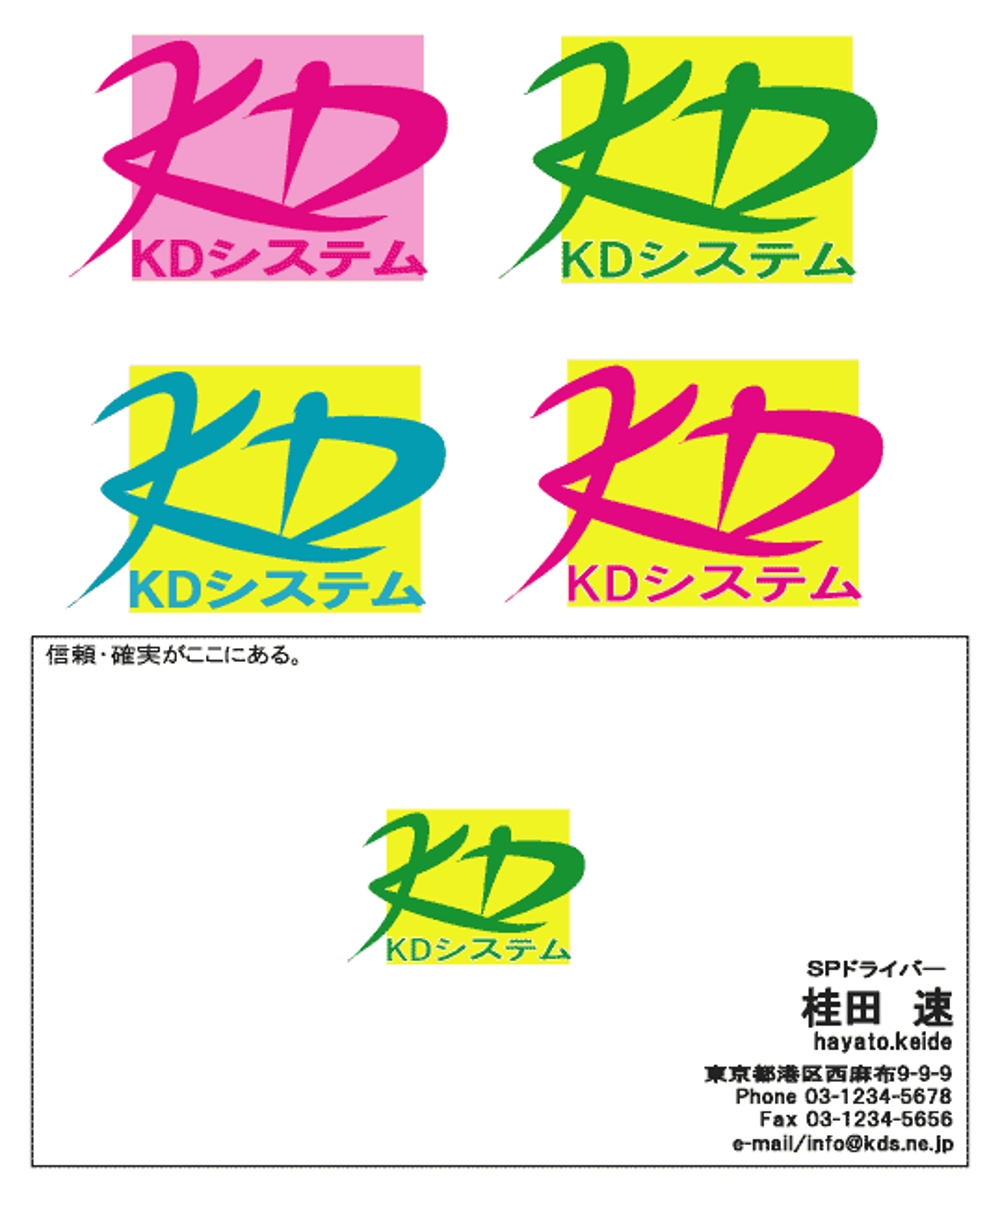 kds_logo01.gif